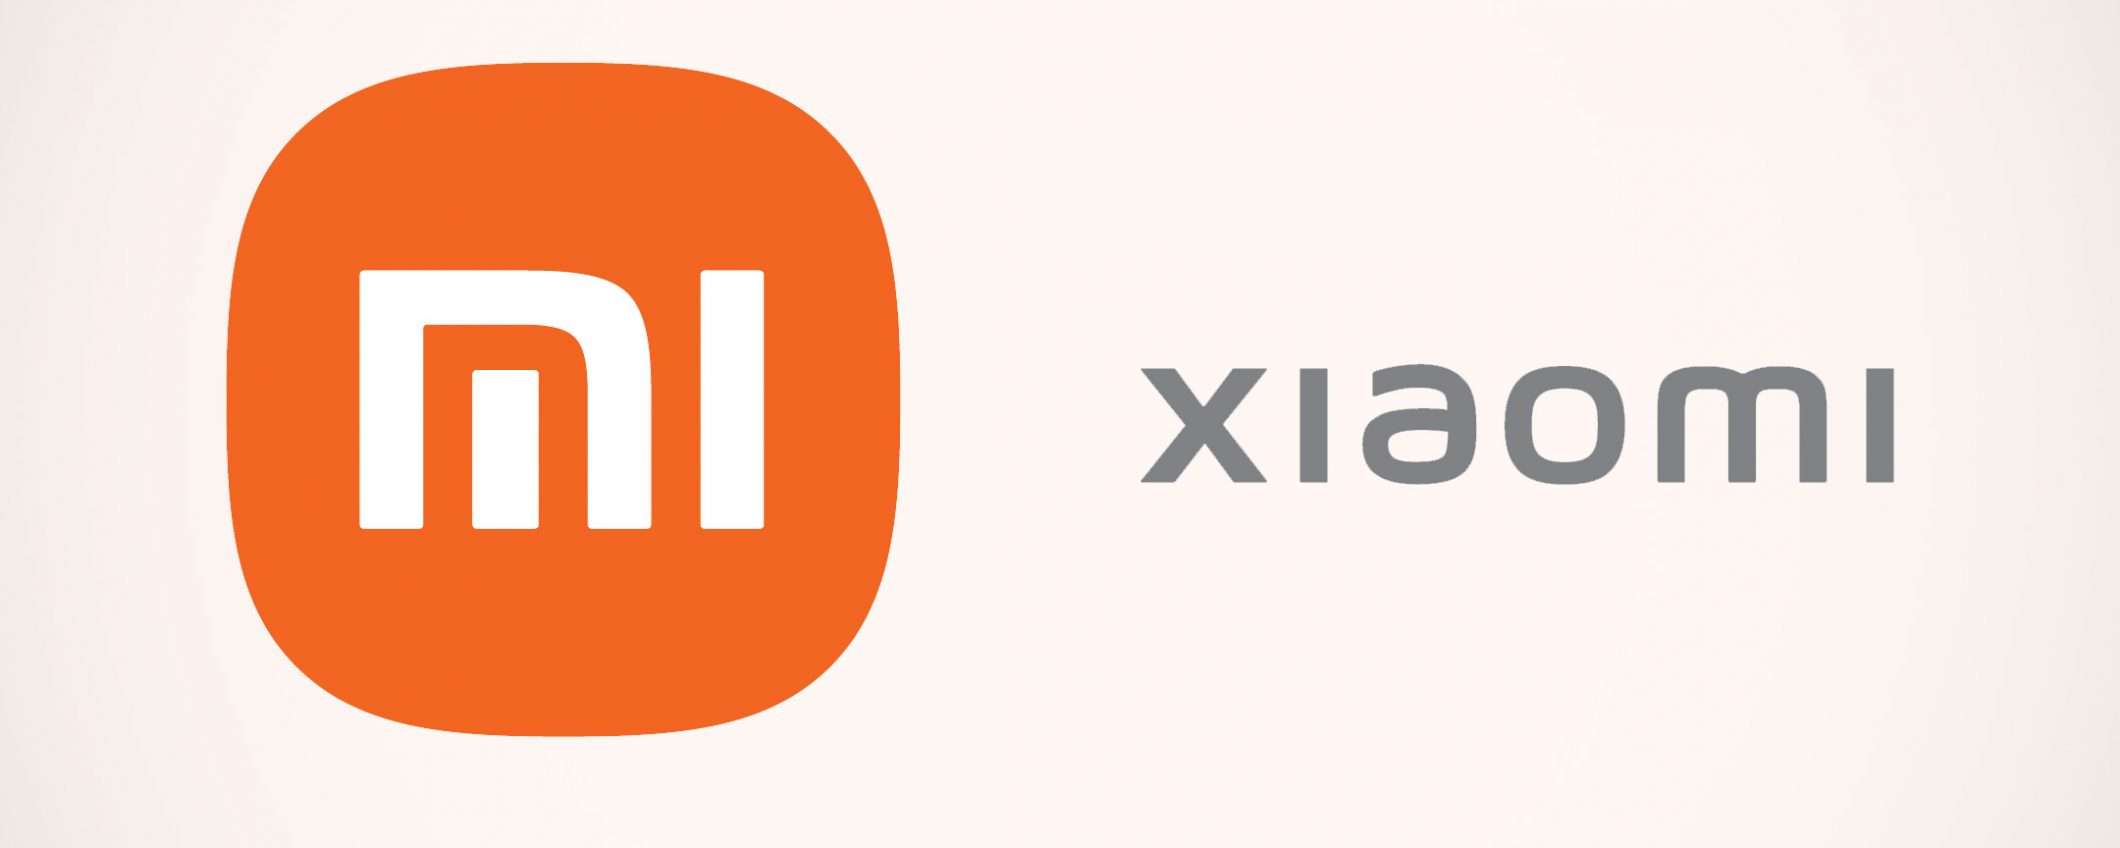 Xiaomi non censura le ricerche e rispetta la privacy